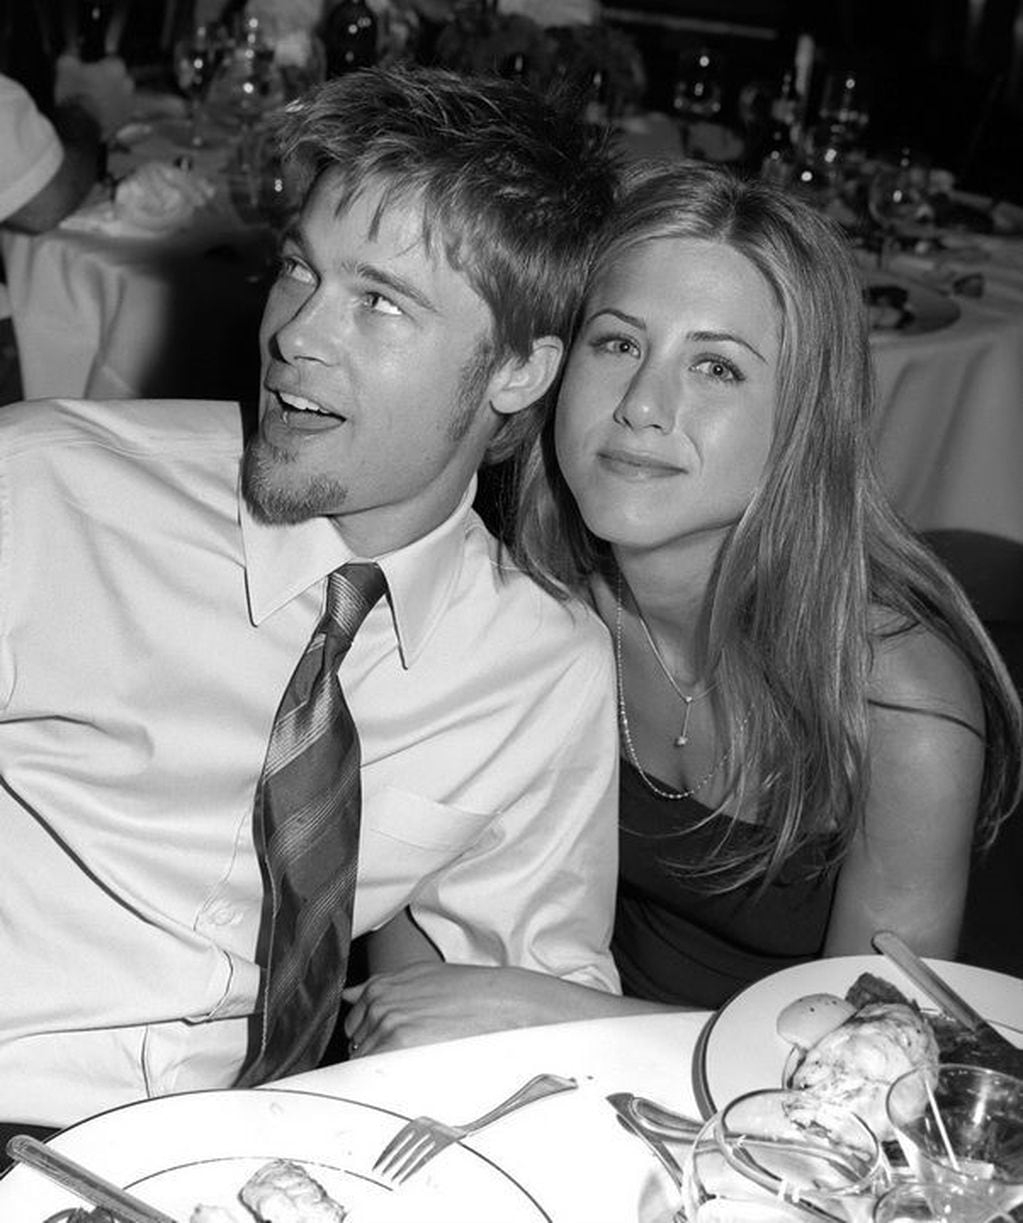 El actor se separó de Jennifer Aniston en medio de los rumores de infidelidad con Angelina Jolie, algo que fue confirmado con una serie de fotos en Kenia. (Foto: Archivo)